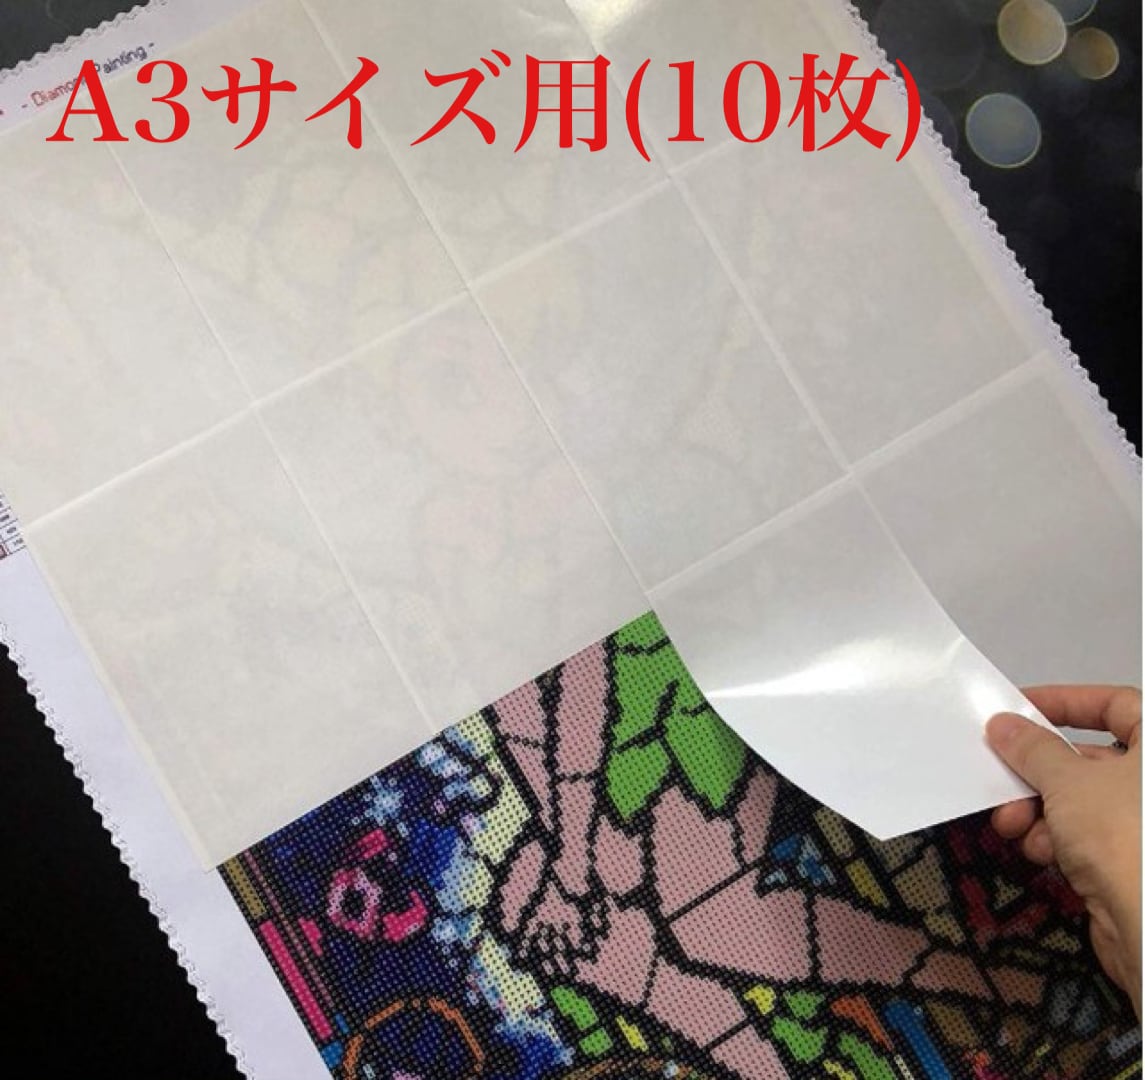 再入荷‼️A3サイズ【剥離紙 10枚セット】ダイヤモンドアート